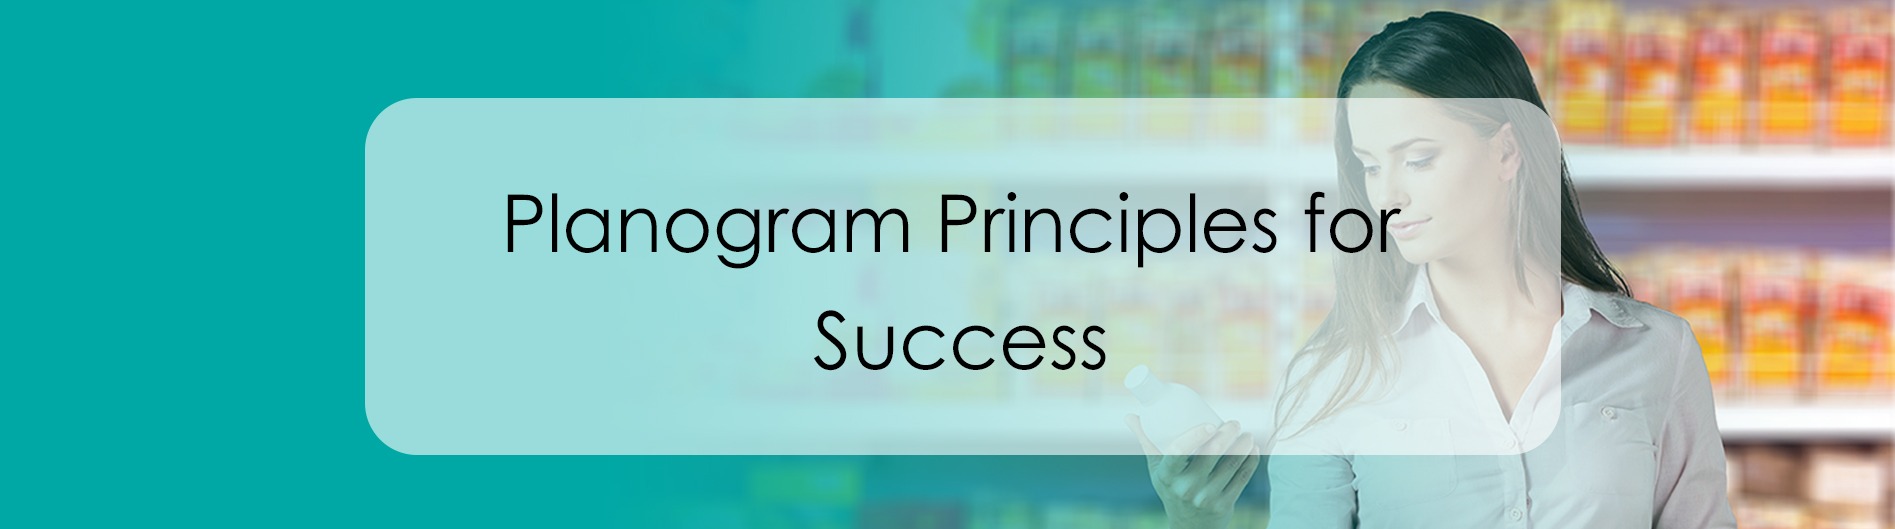 Planogram principles for success